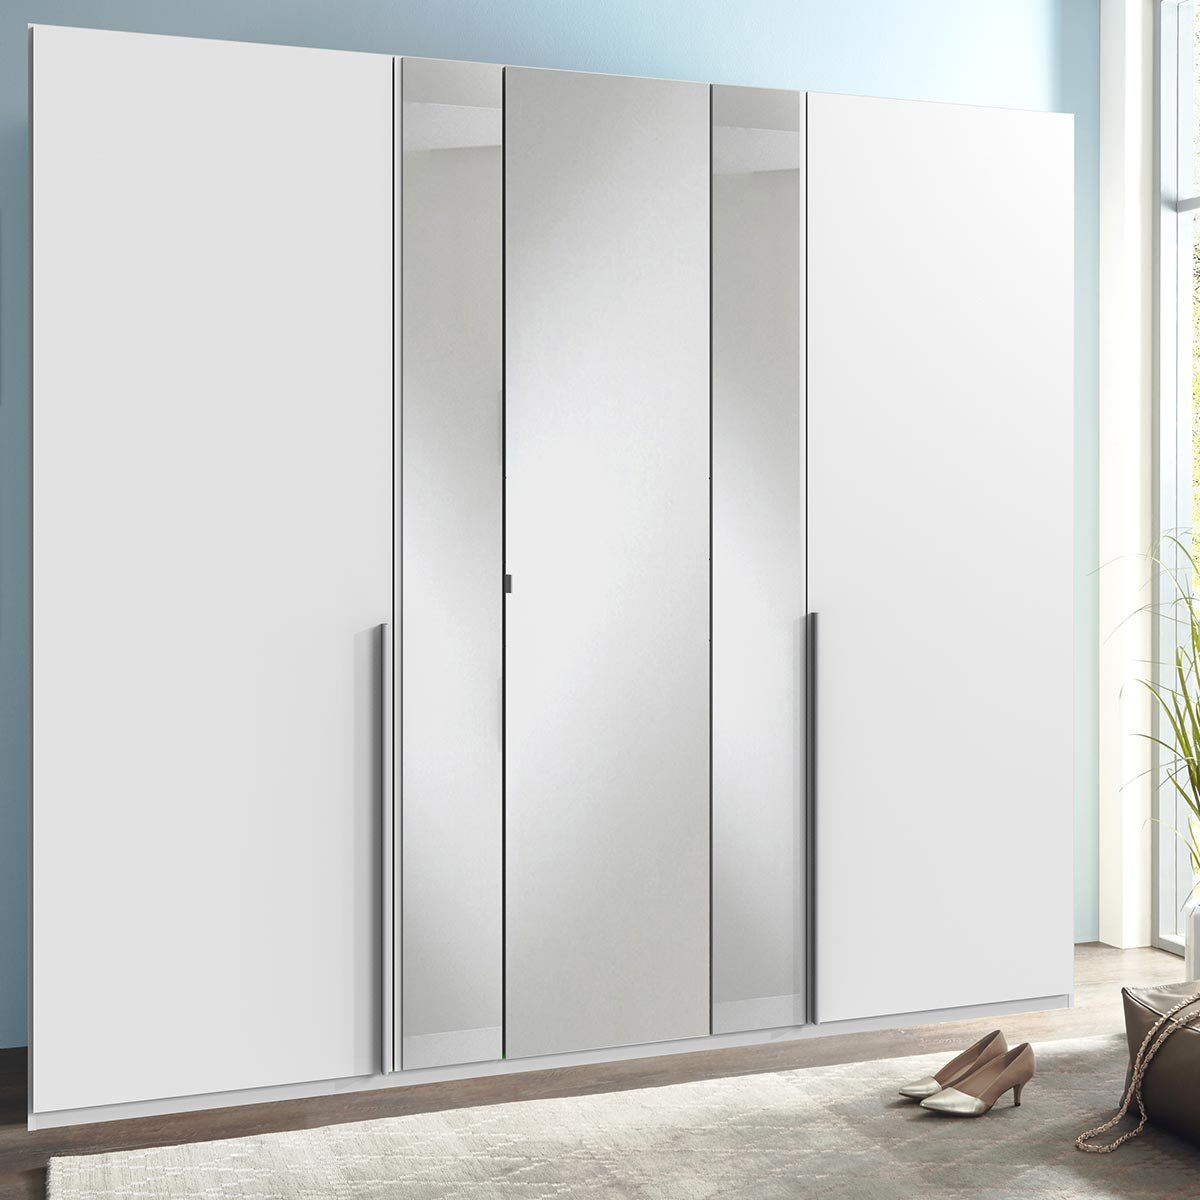 Wimex Vanea Kleiderschrank 3 Spiegel 225 cm Weiß | Kleiderschränke